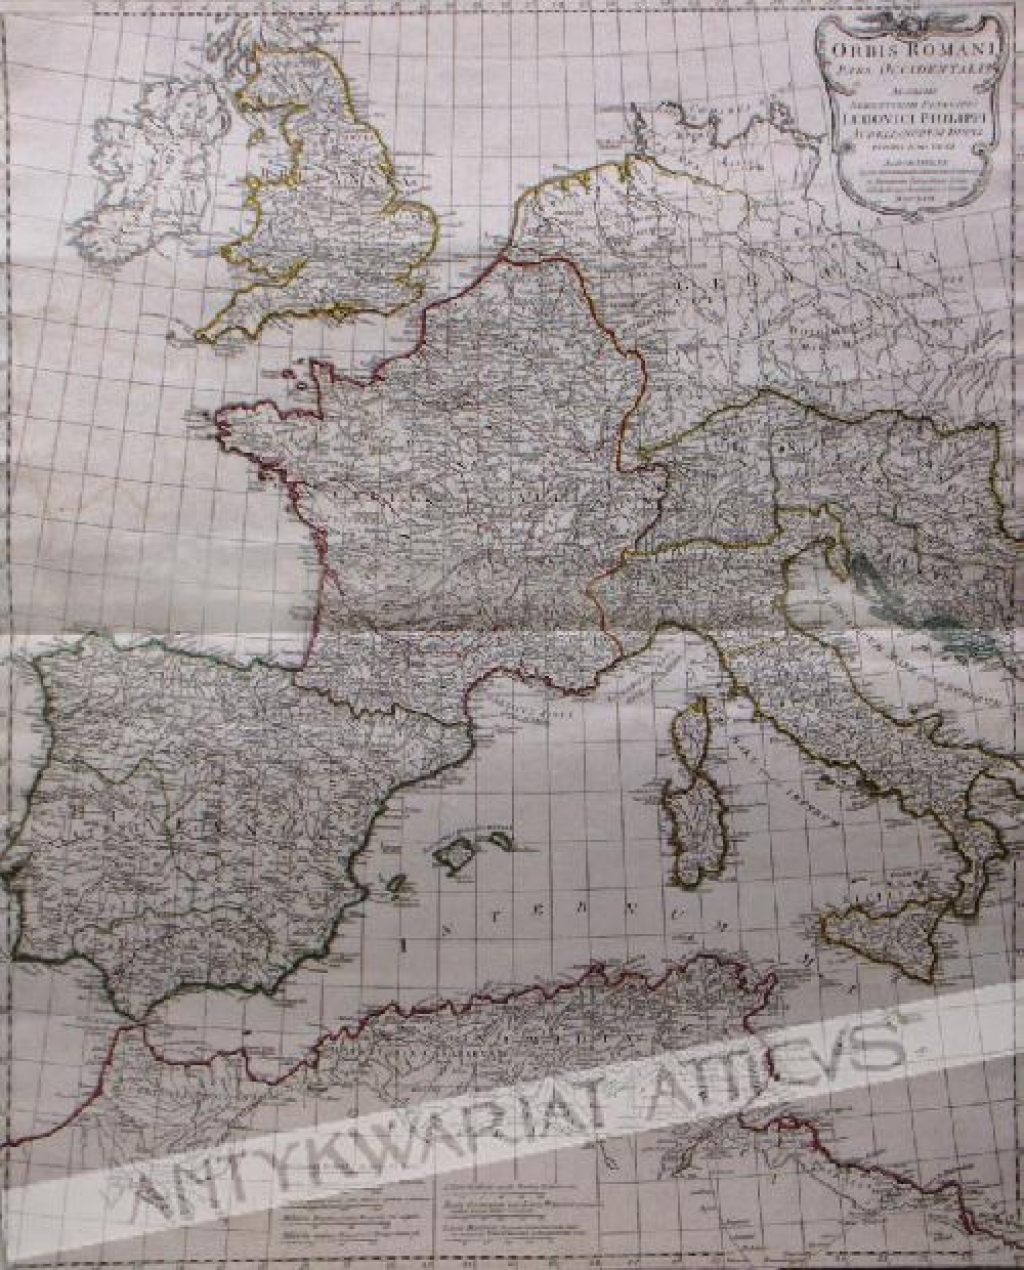 [mapa, 1794, Imperium Rzymskie - część zachodnia] Orbis Romani pars occidentalis